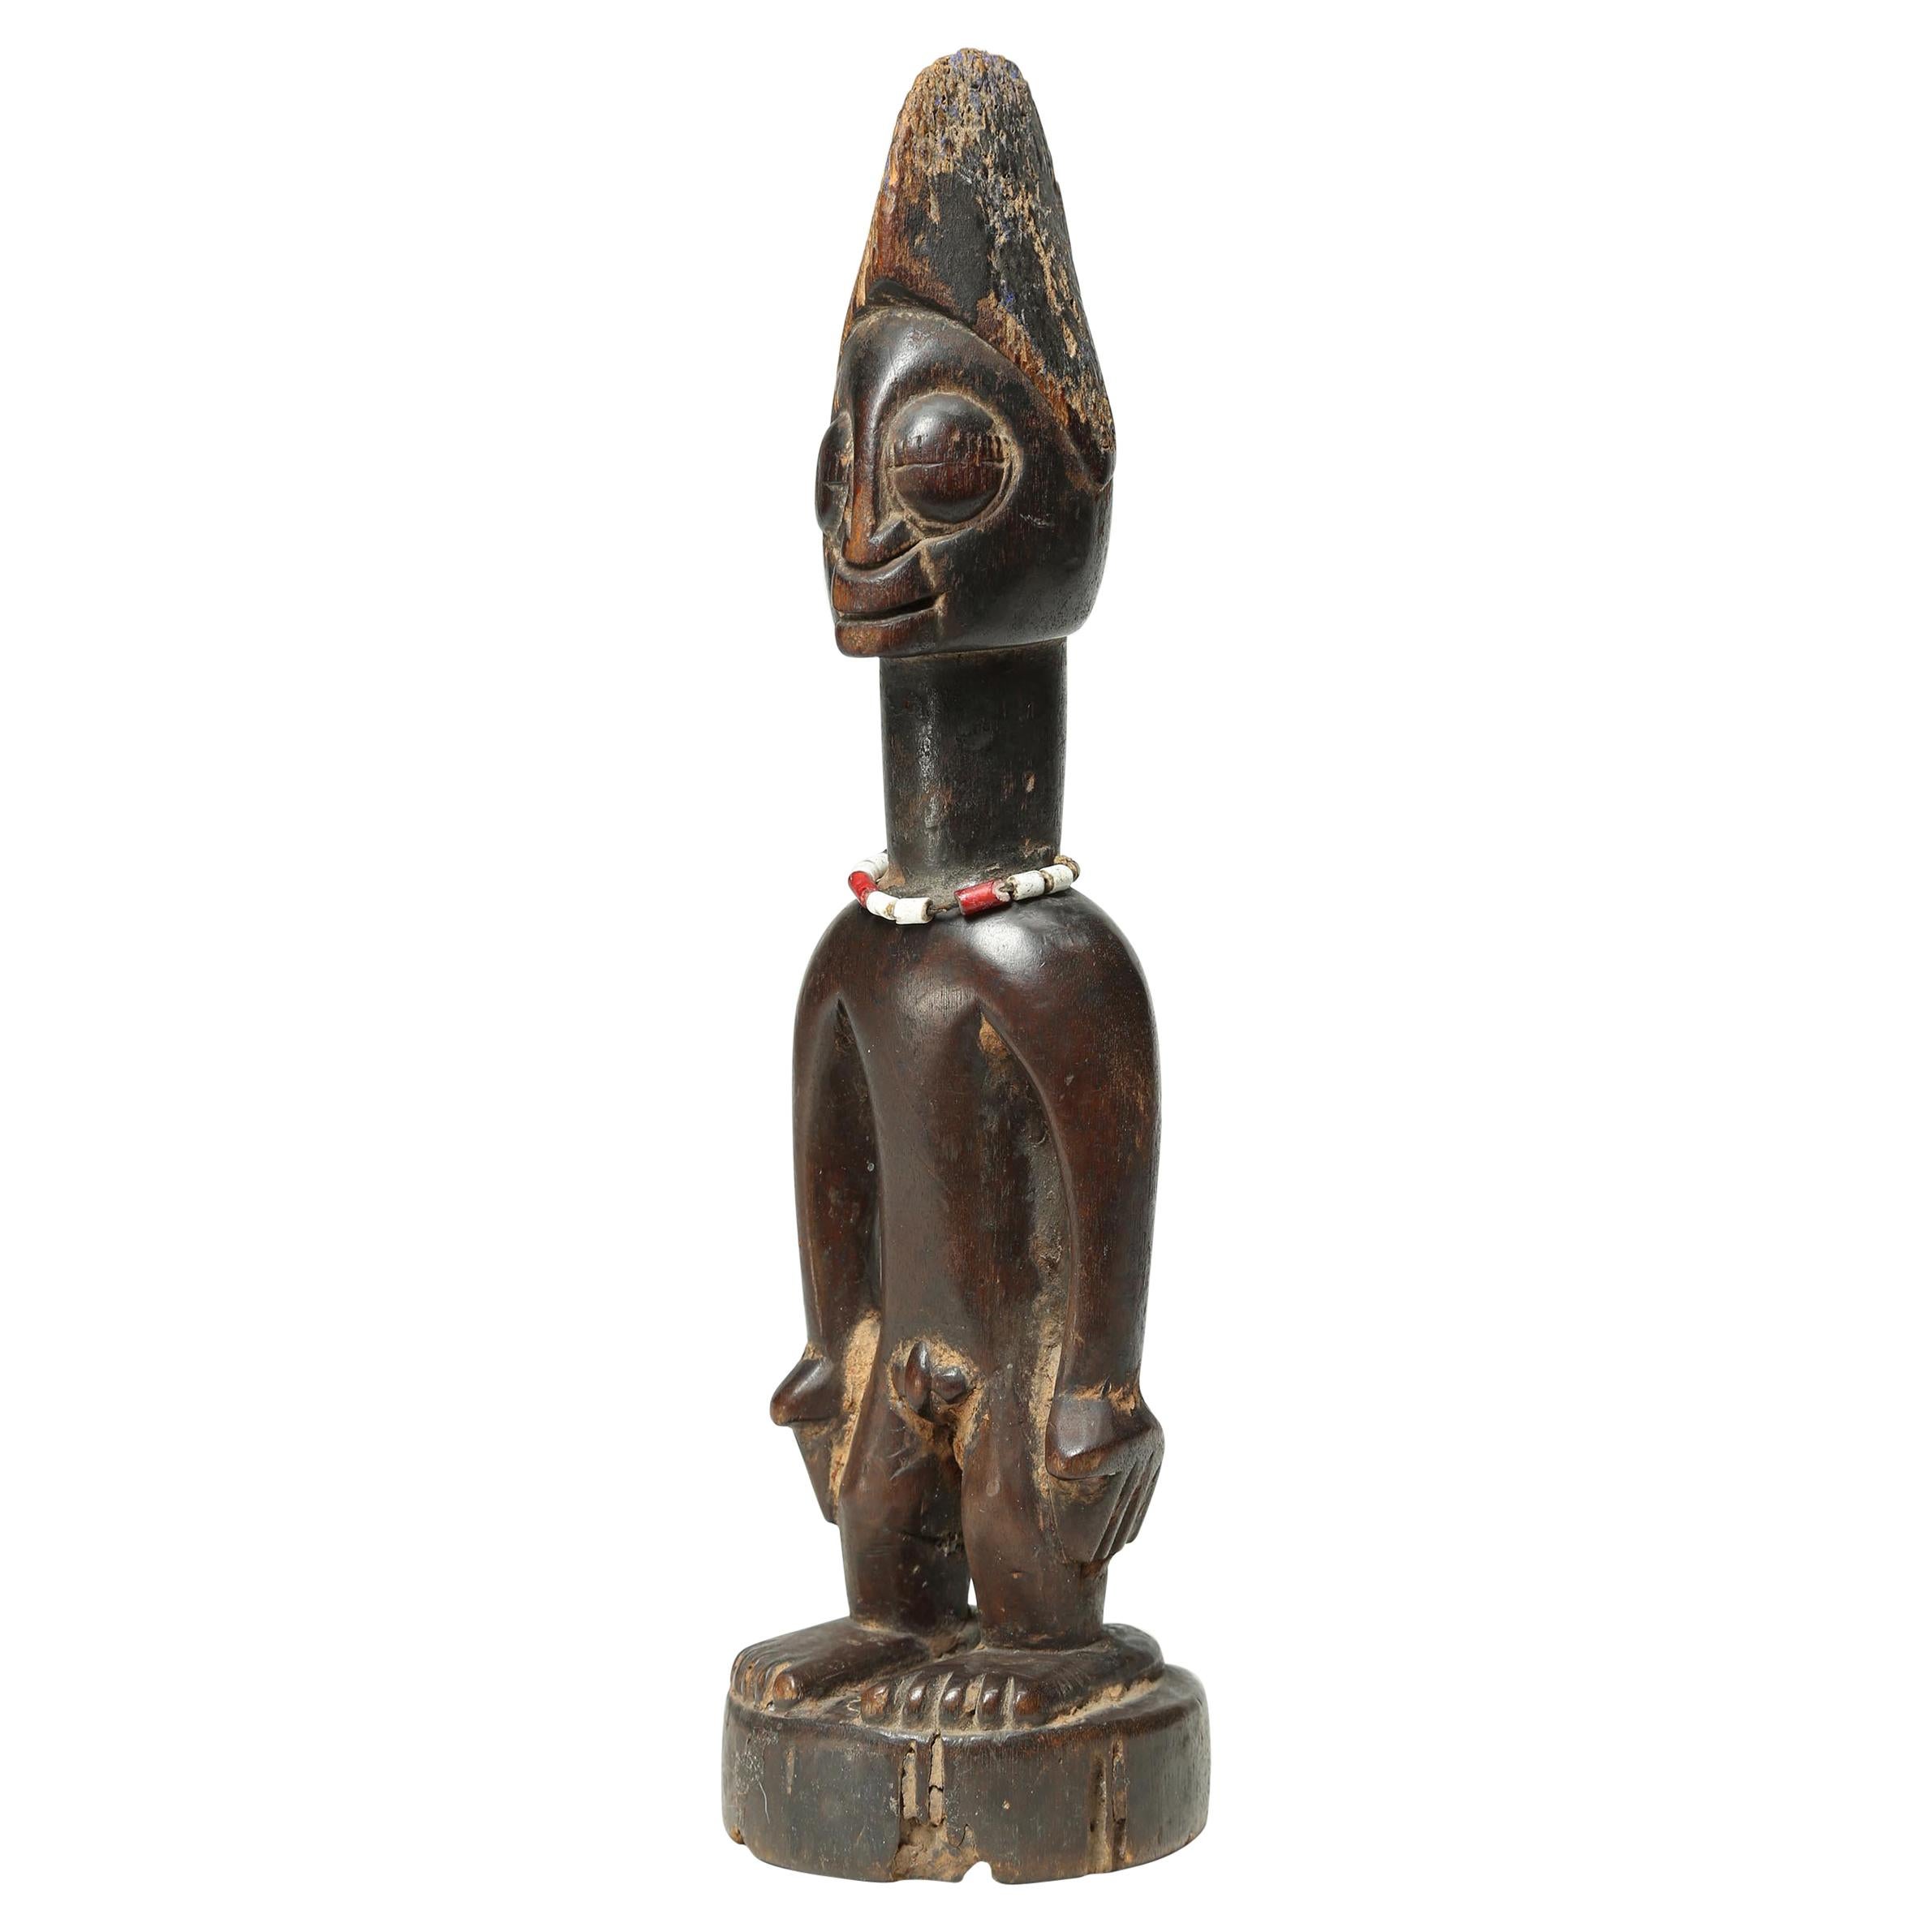 Yoruba Tribal Male Figure, an Ibeji or Twin Figure, Nigeria, Africa, Large Eyes